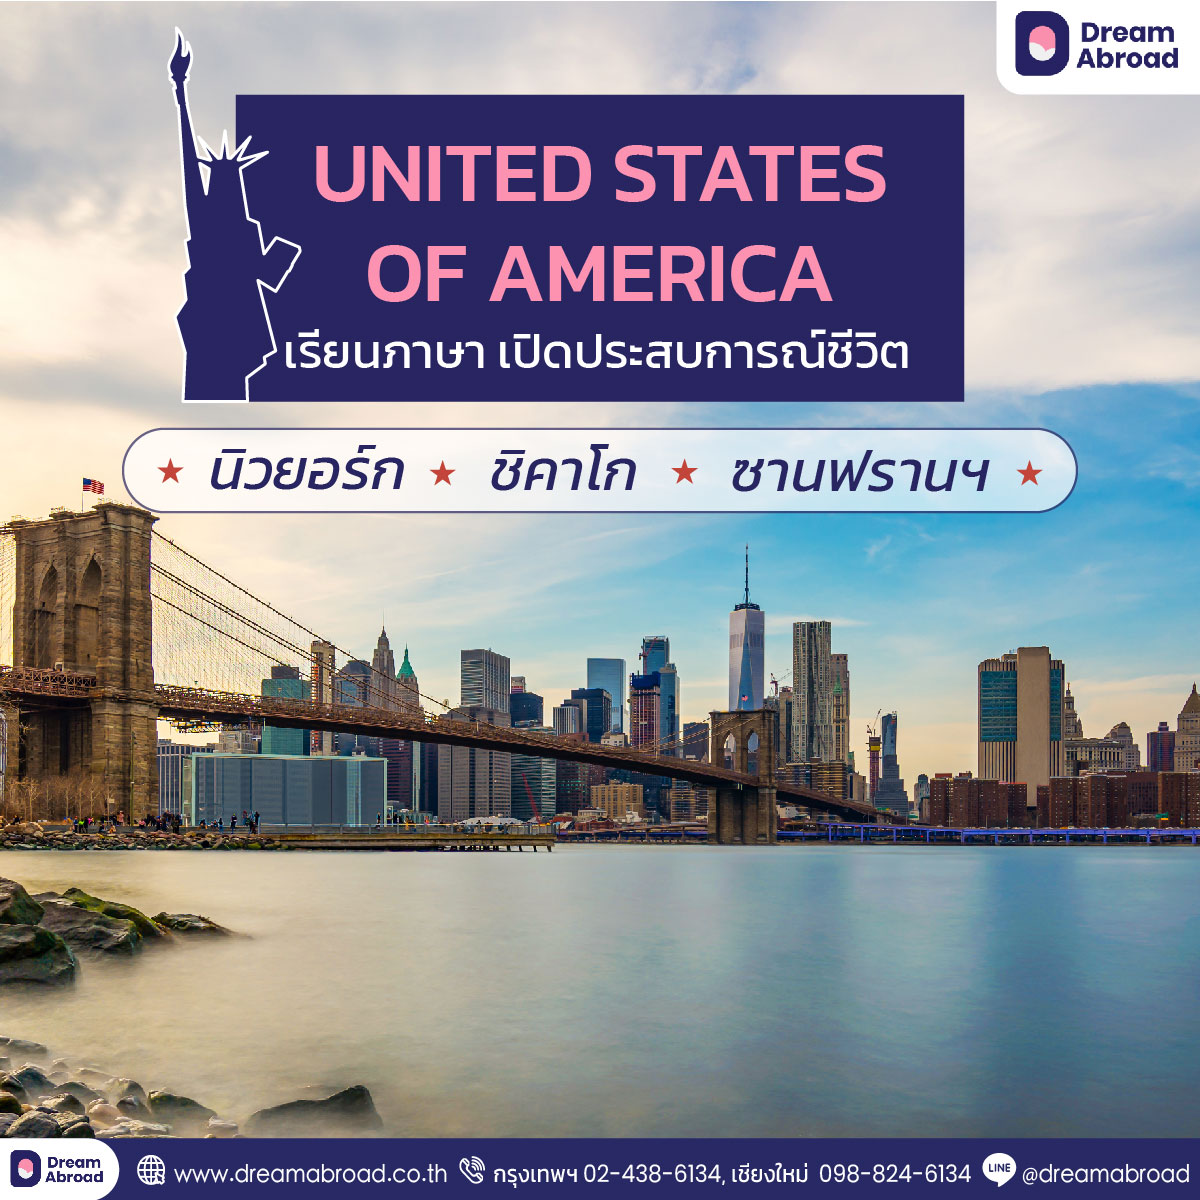 เรียนต่ออเมริกา เรียนภาษาอเมริกา ระยะสั้น 1- 6 เดือน By Dream Abroad